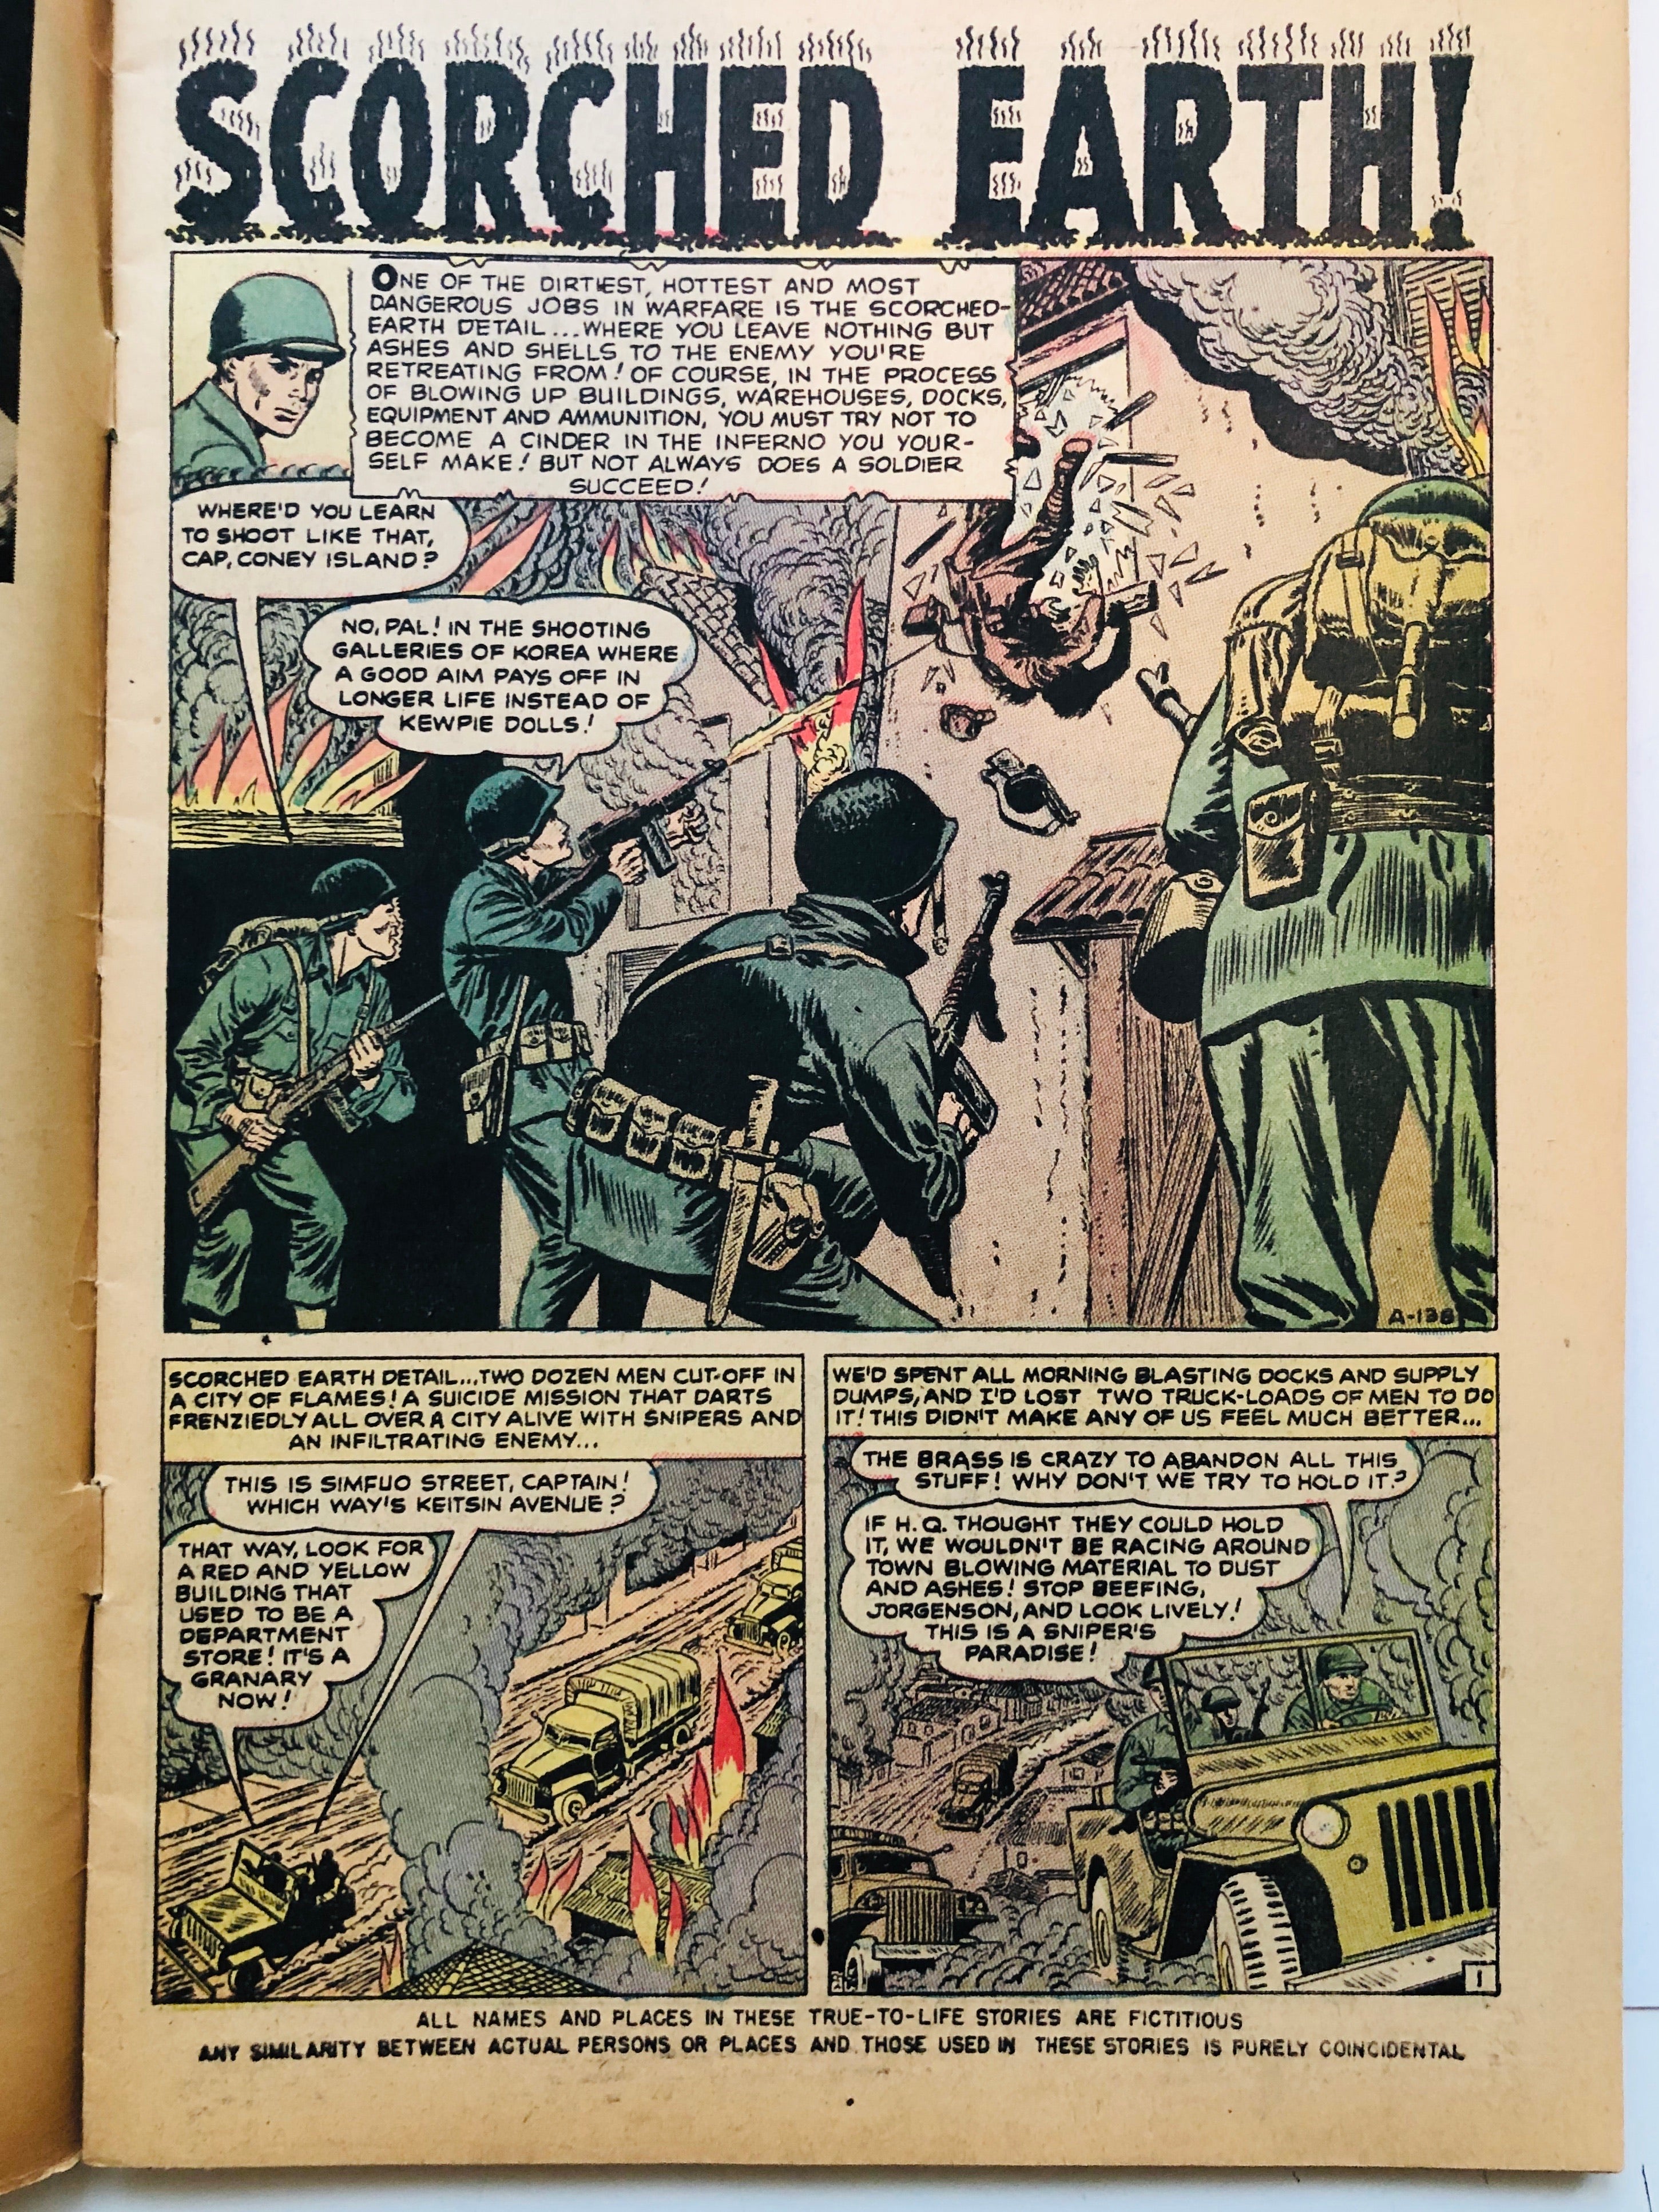 Spy Cases vintage War comic book 1952